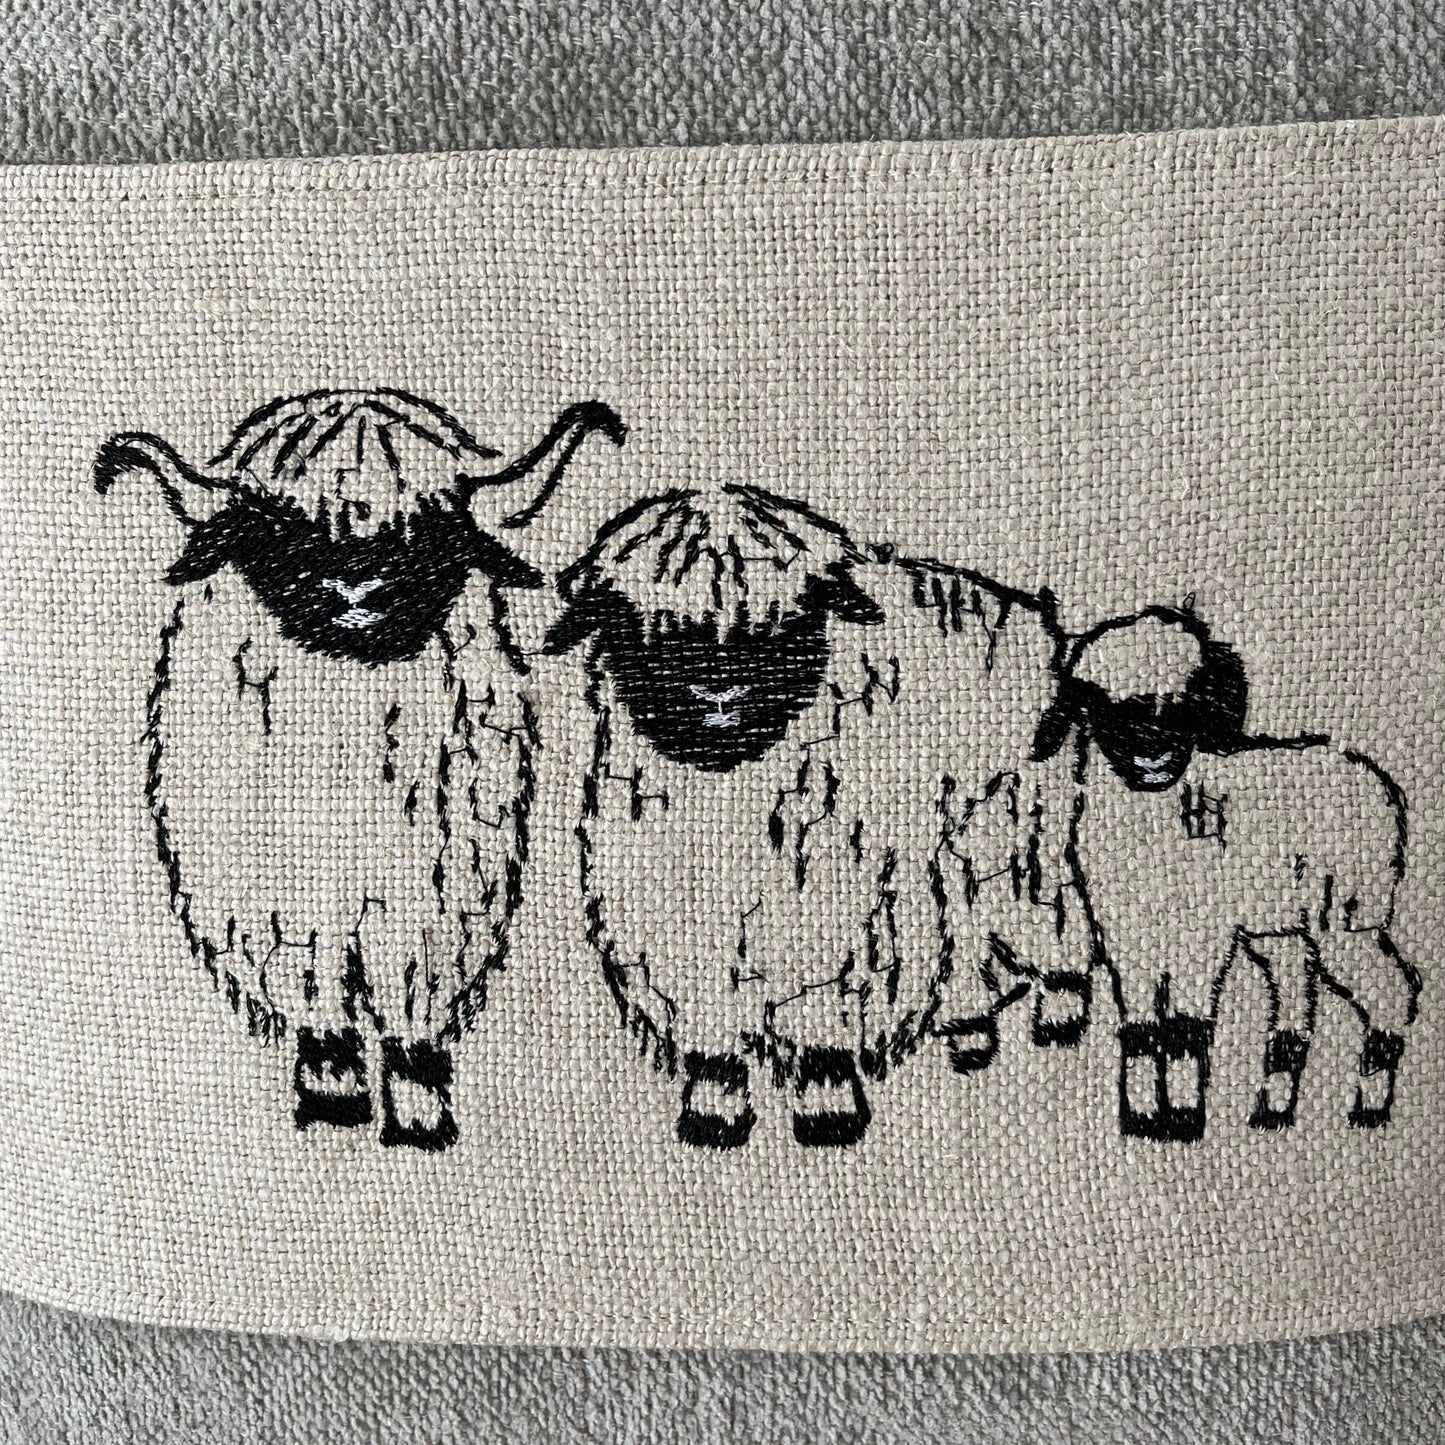 Blacknose Sheep cushion cover, three sheep, grey